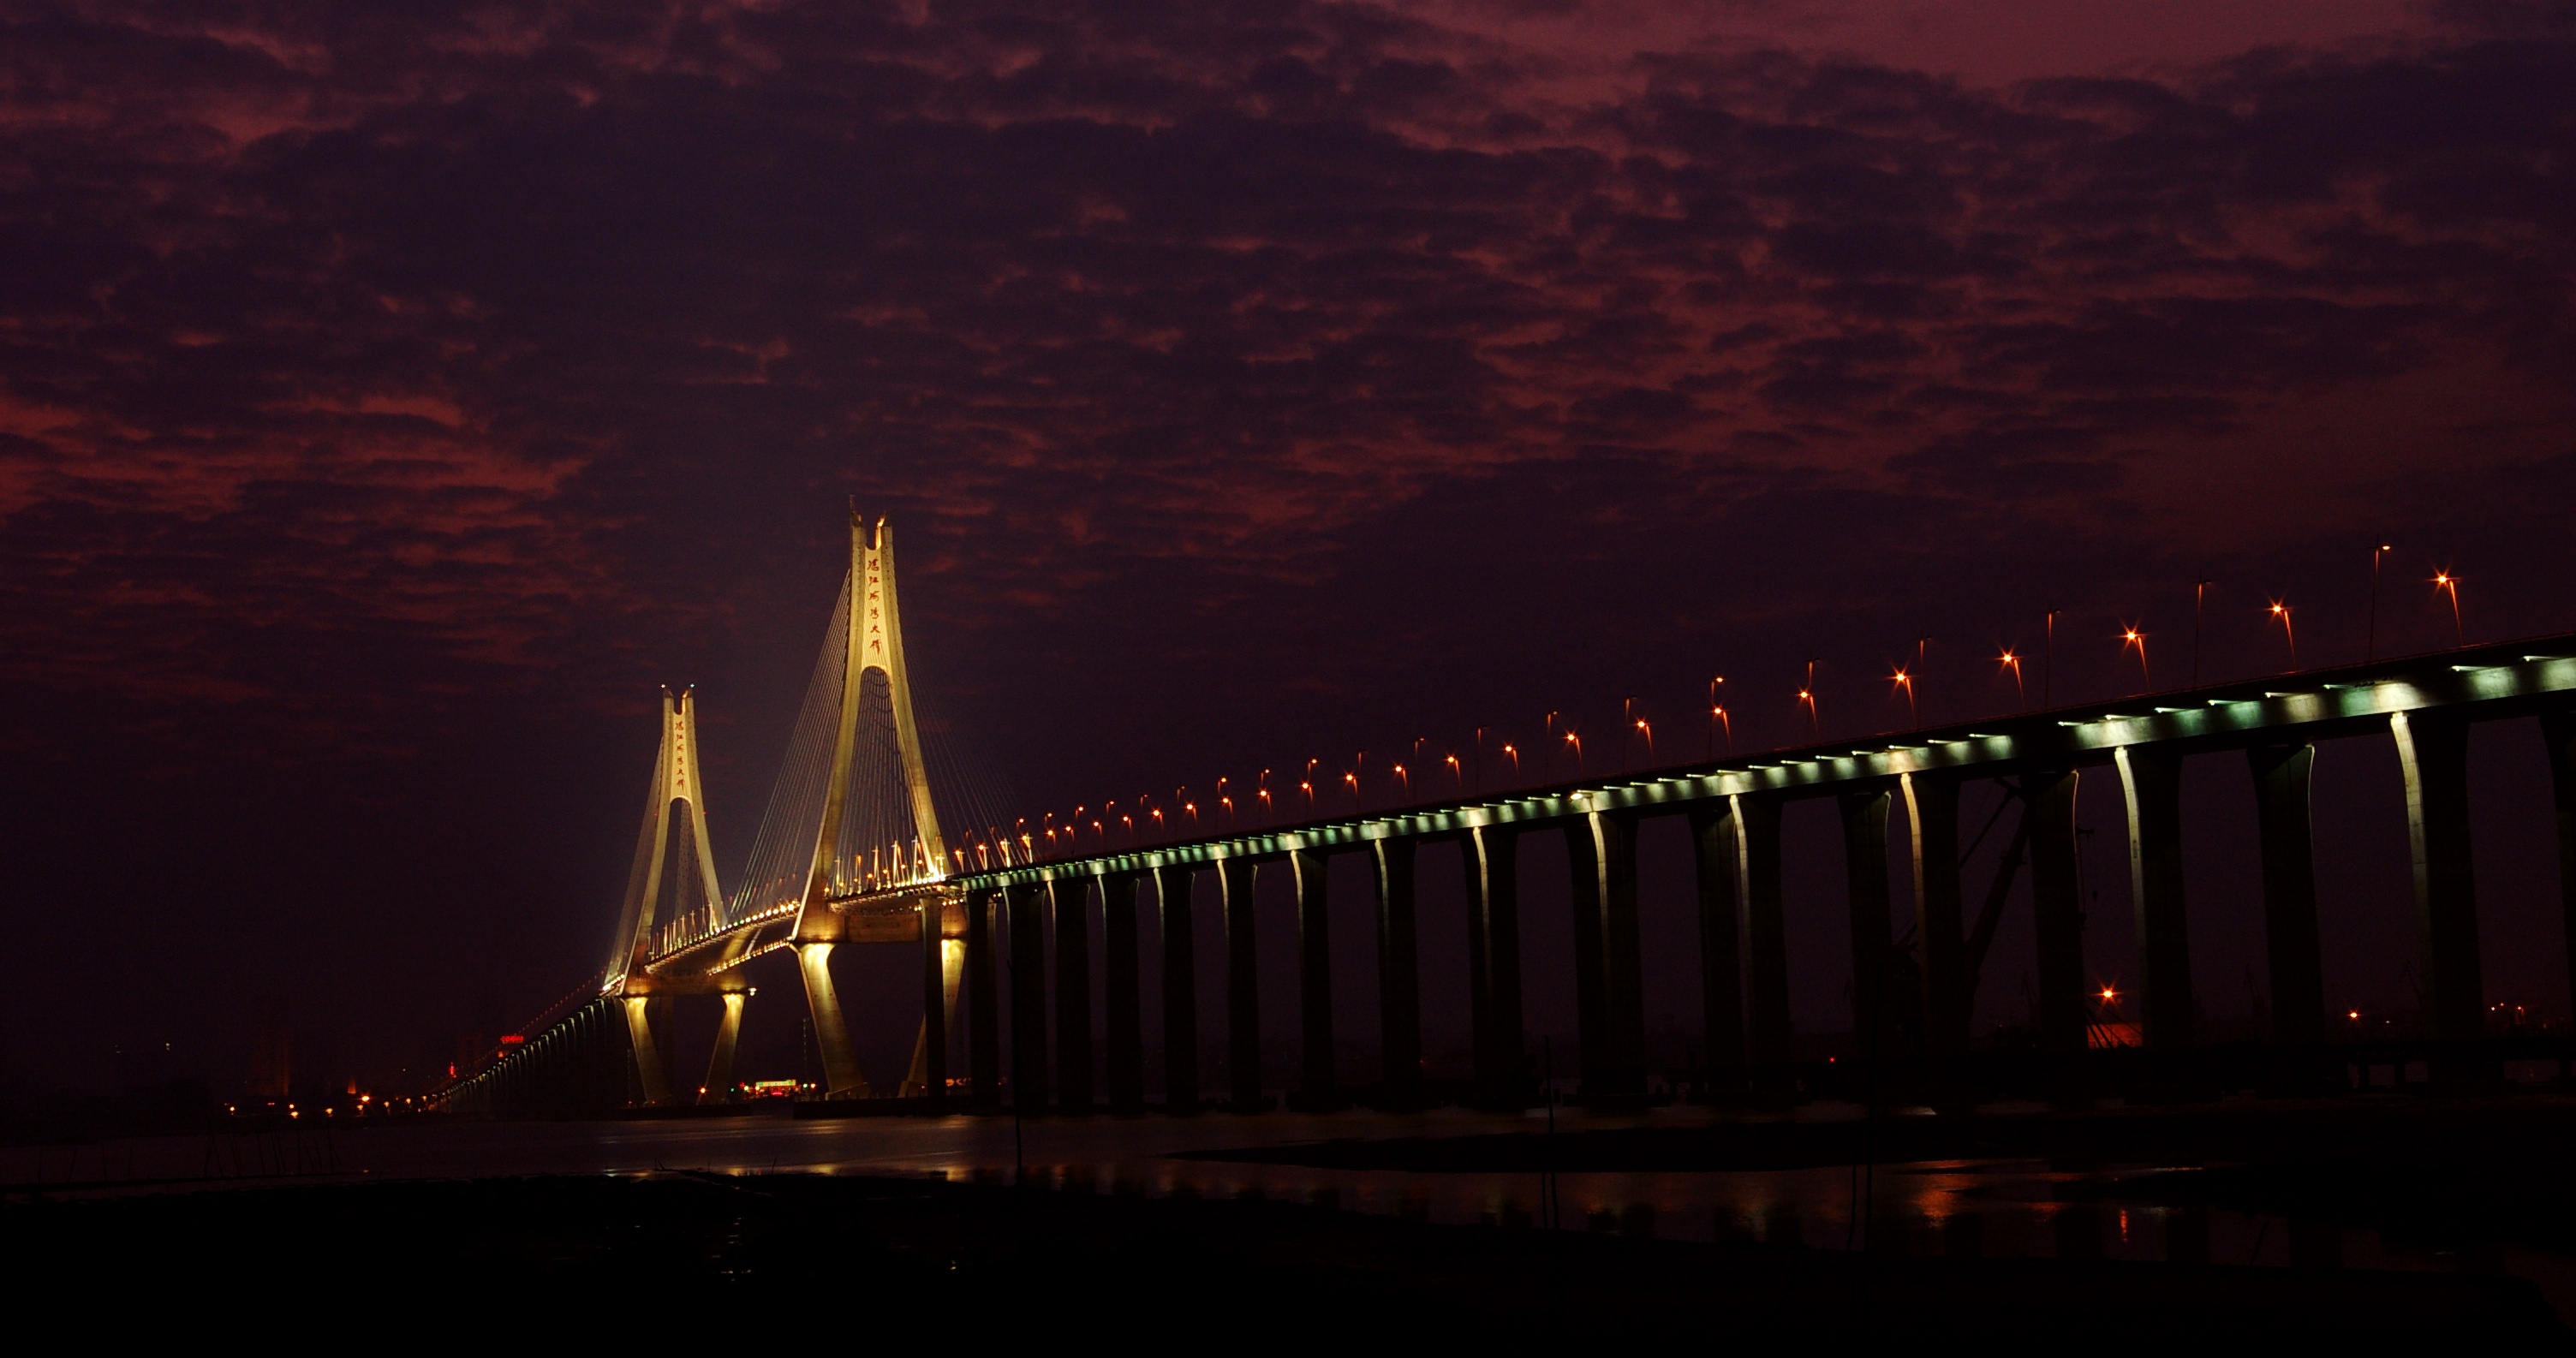 湛江海湾大桥-中铁大桥勘测设计院集团有限公司